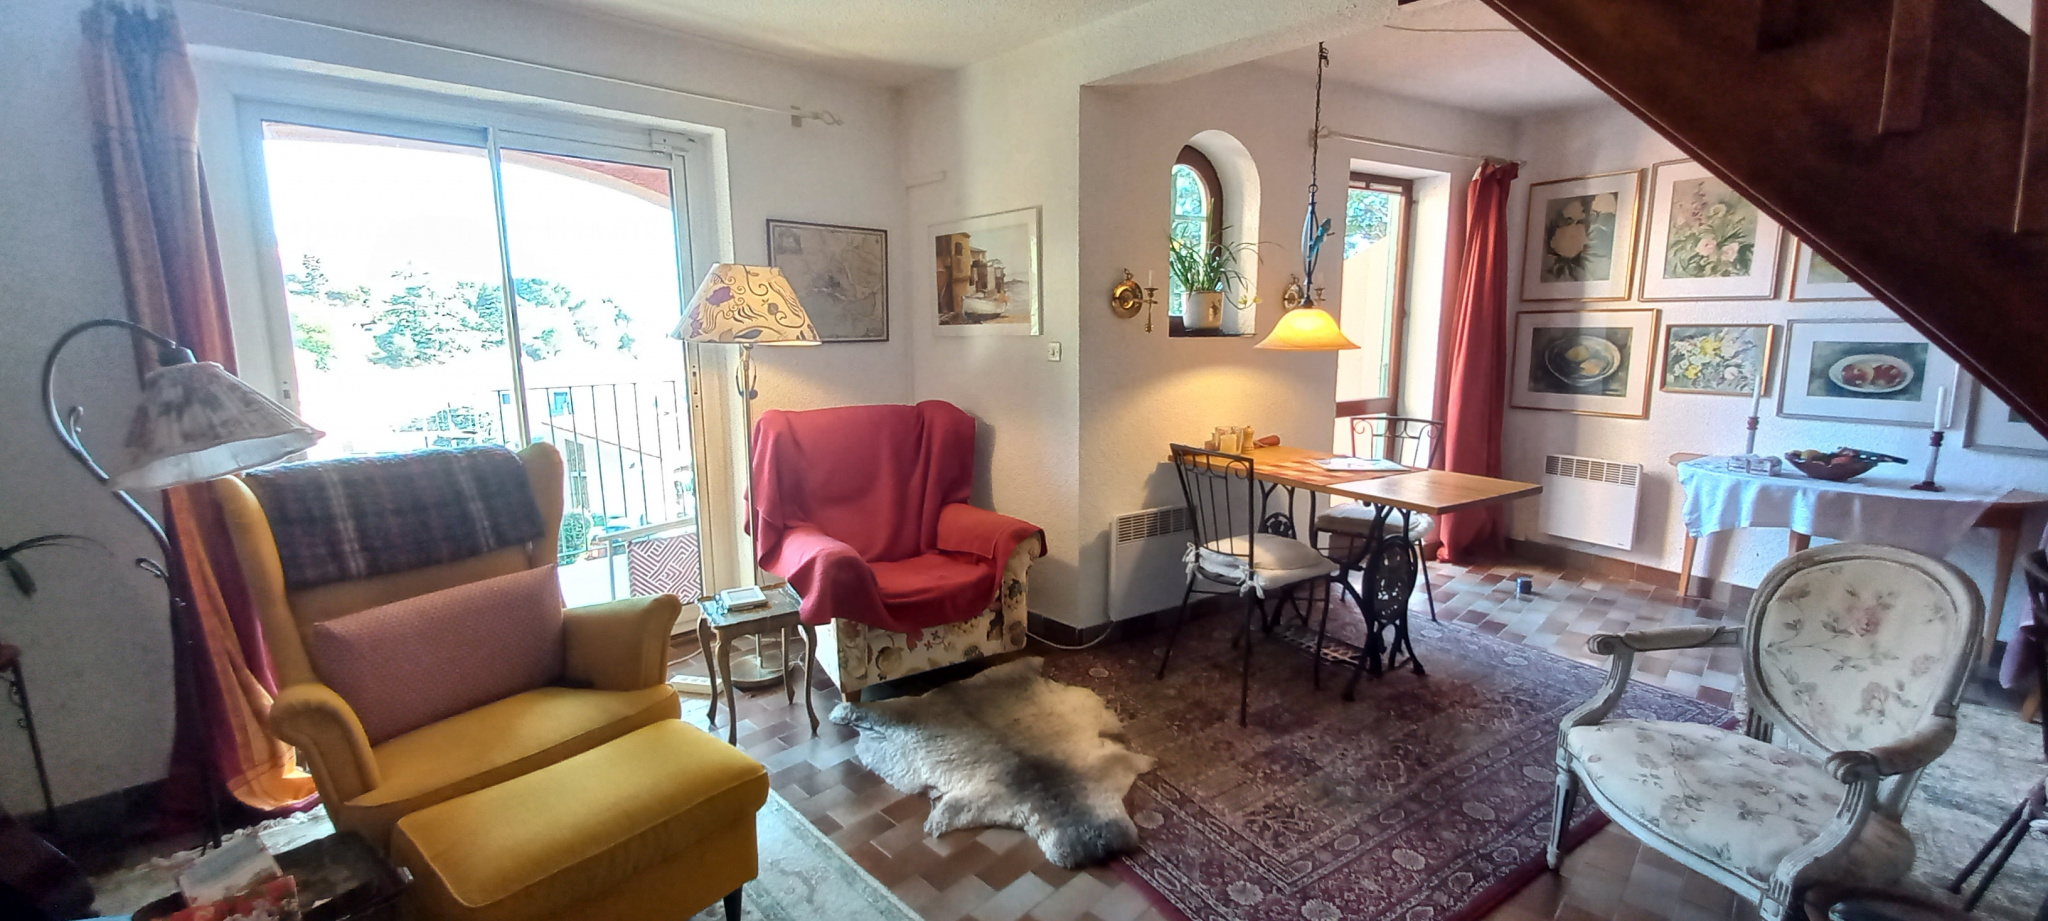 À vendre maison/villa de 59m2 à collioure (66190) - Photo 2'